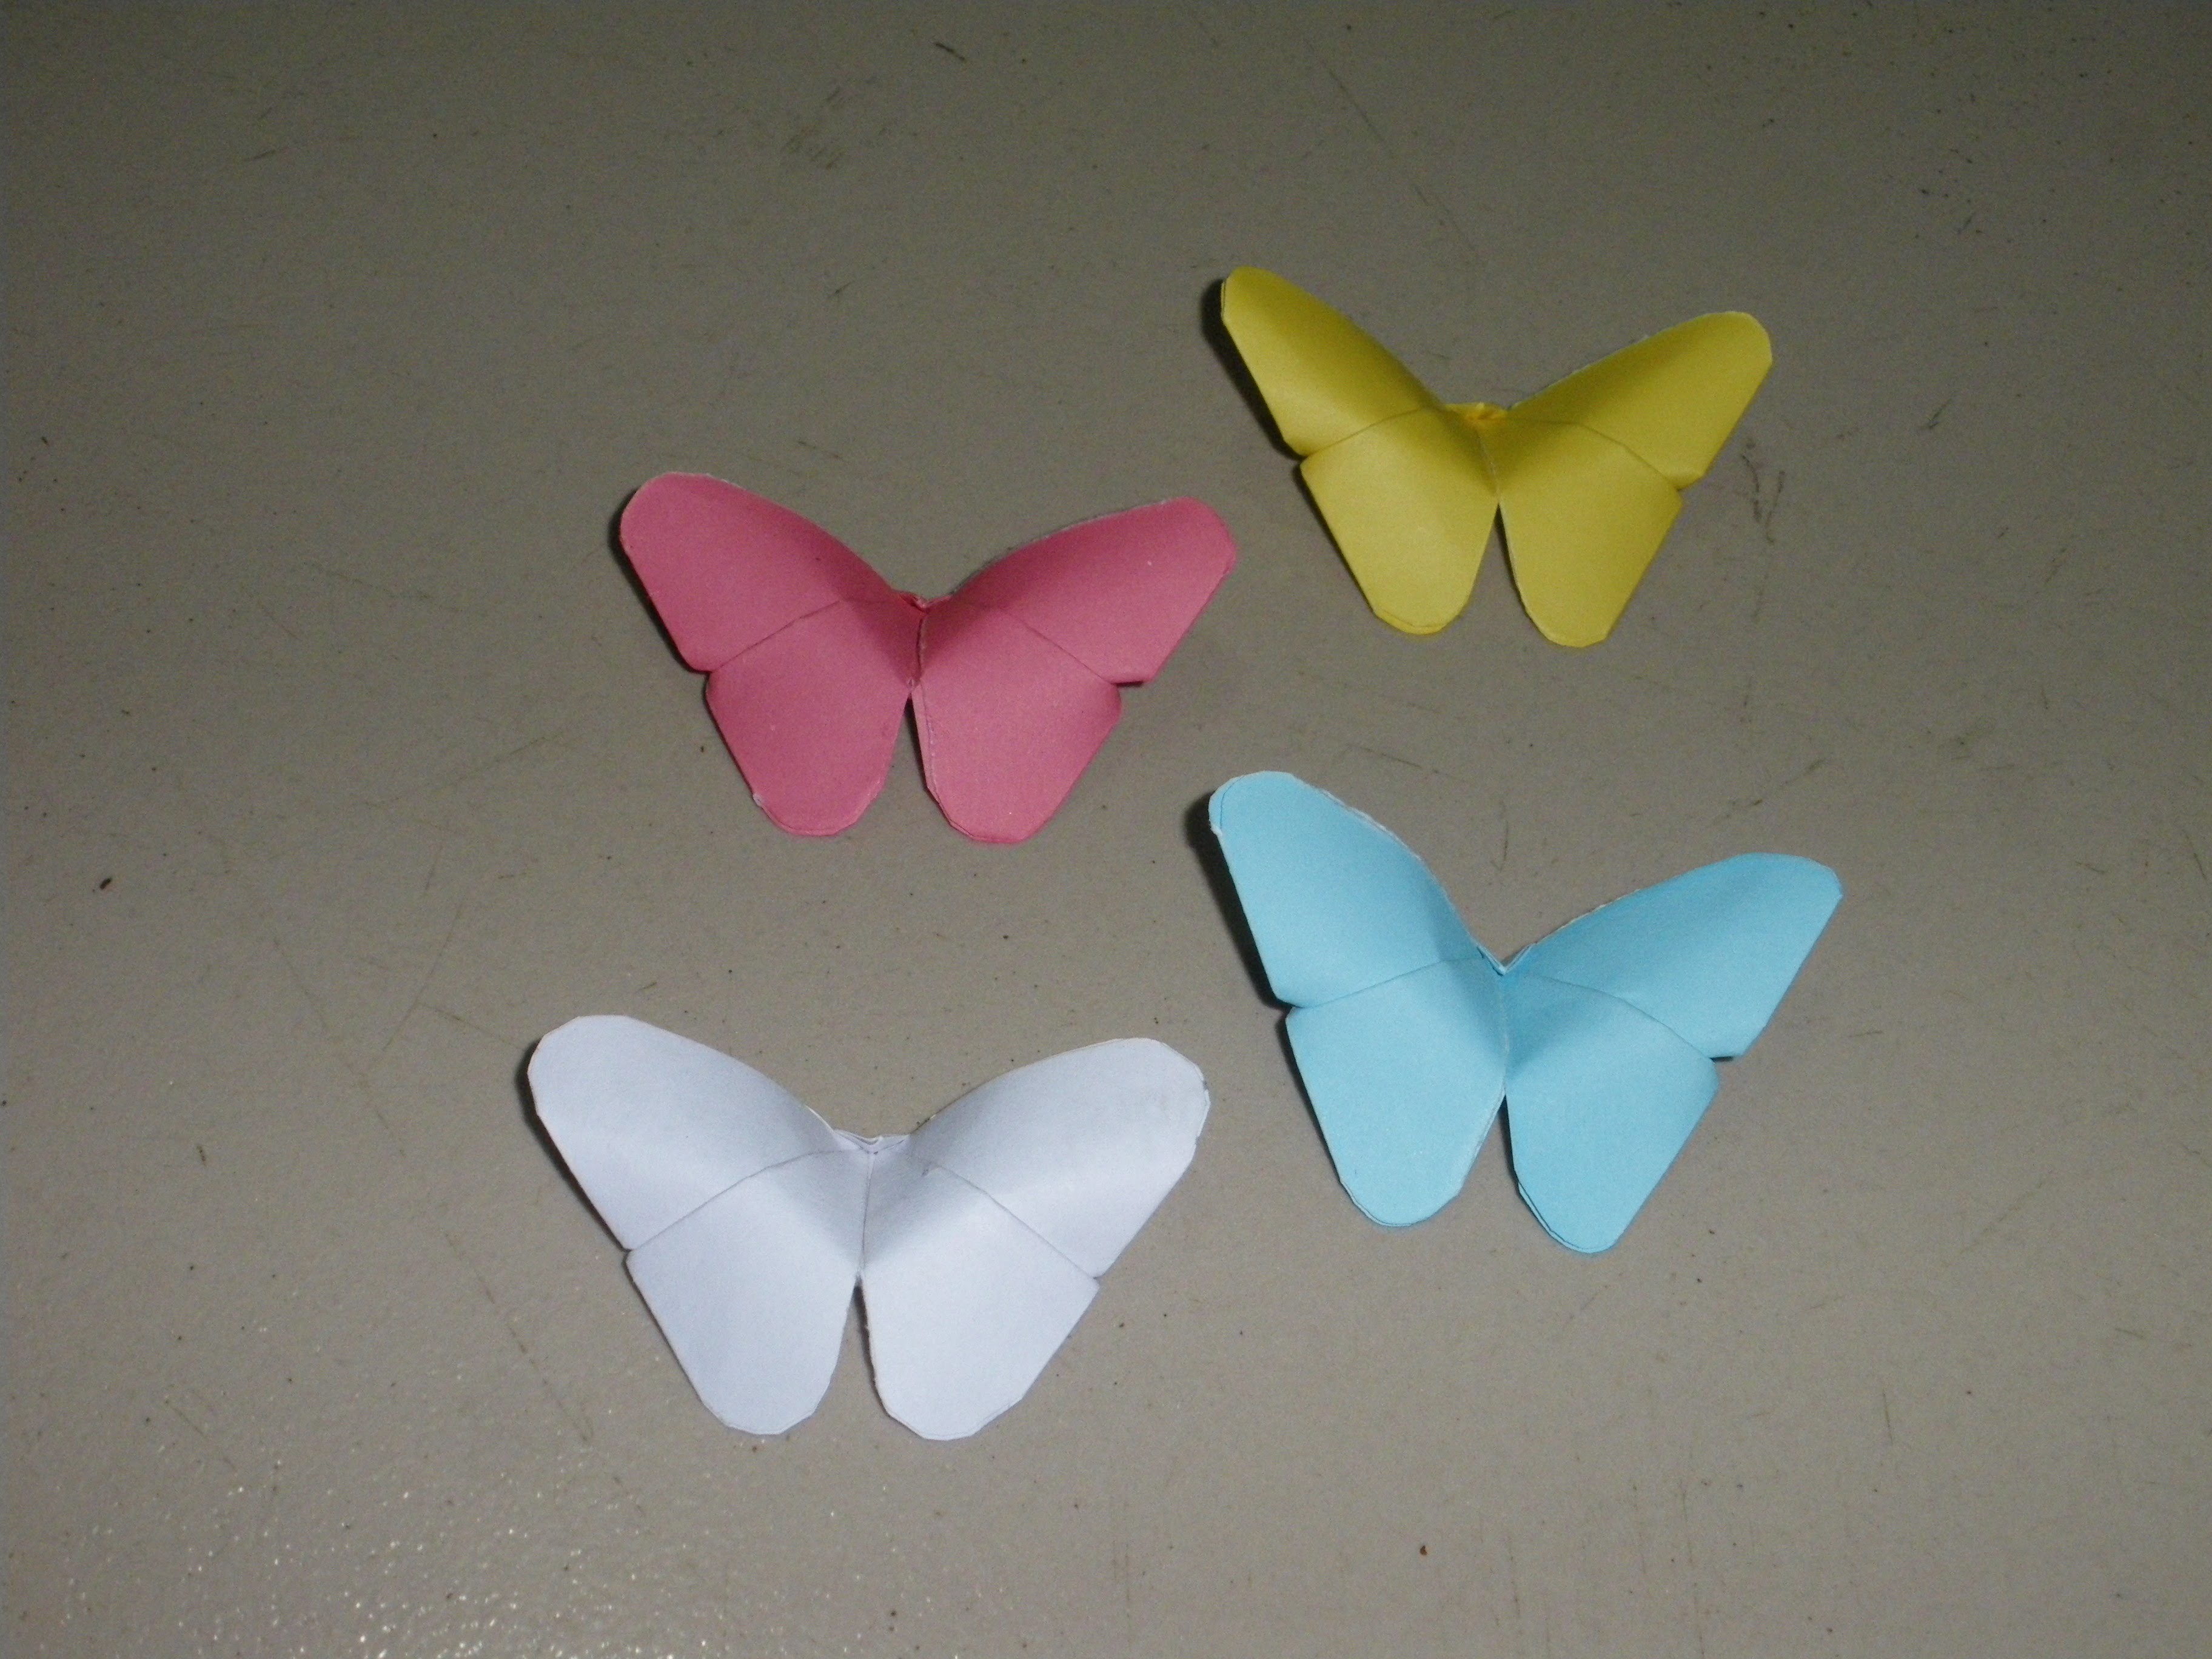 Basteln: Origami Schmetterling Falten Mit Papier ~ Bastelideen ~ Diy. Basteltipps. Geschenkideen